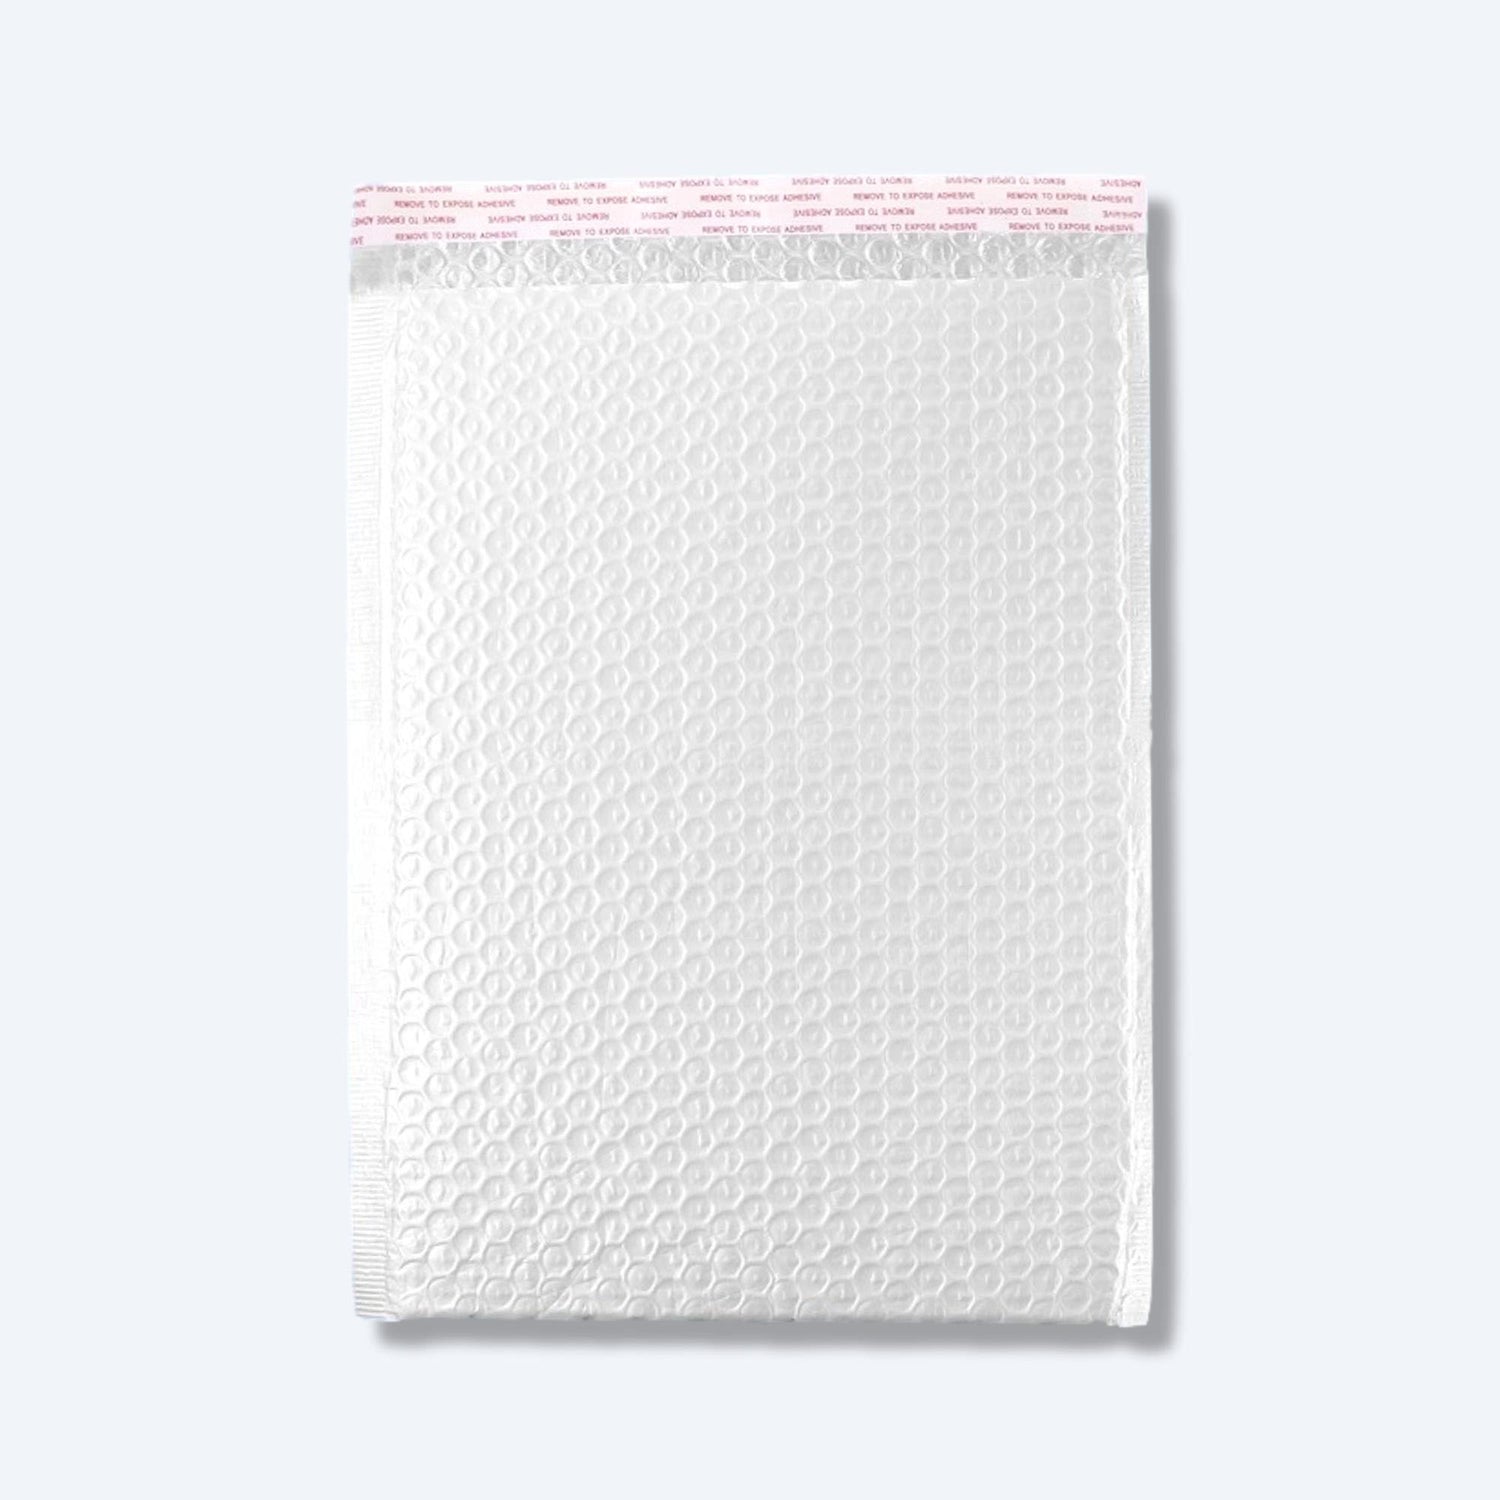 電商適用防撞白色bubble氣珠膠袋，特製氣珠膠結構，確保郵寄安全性與商品防護。